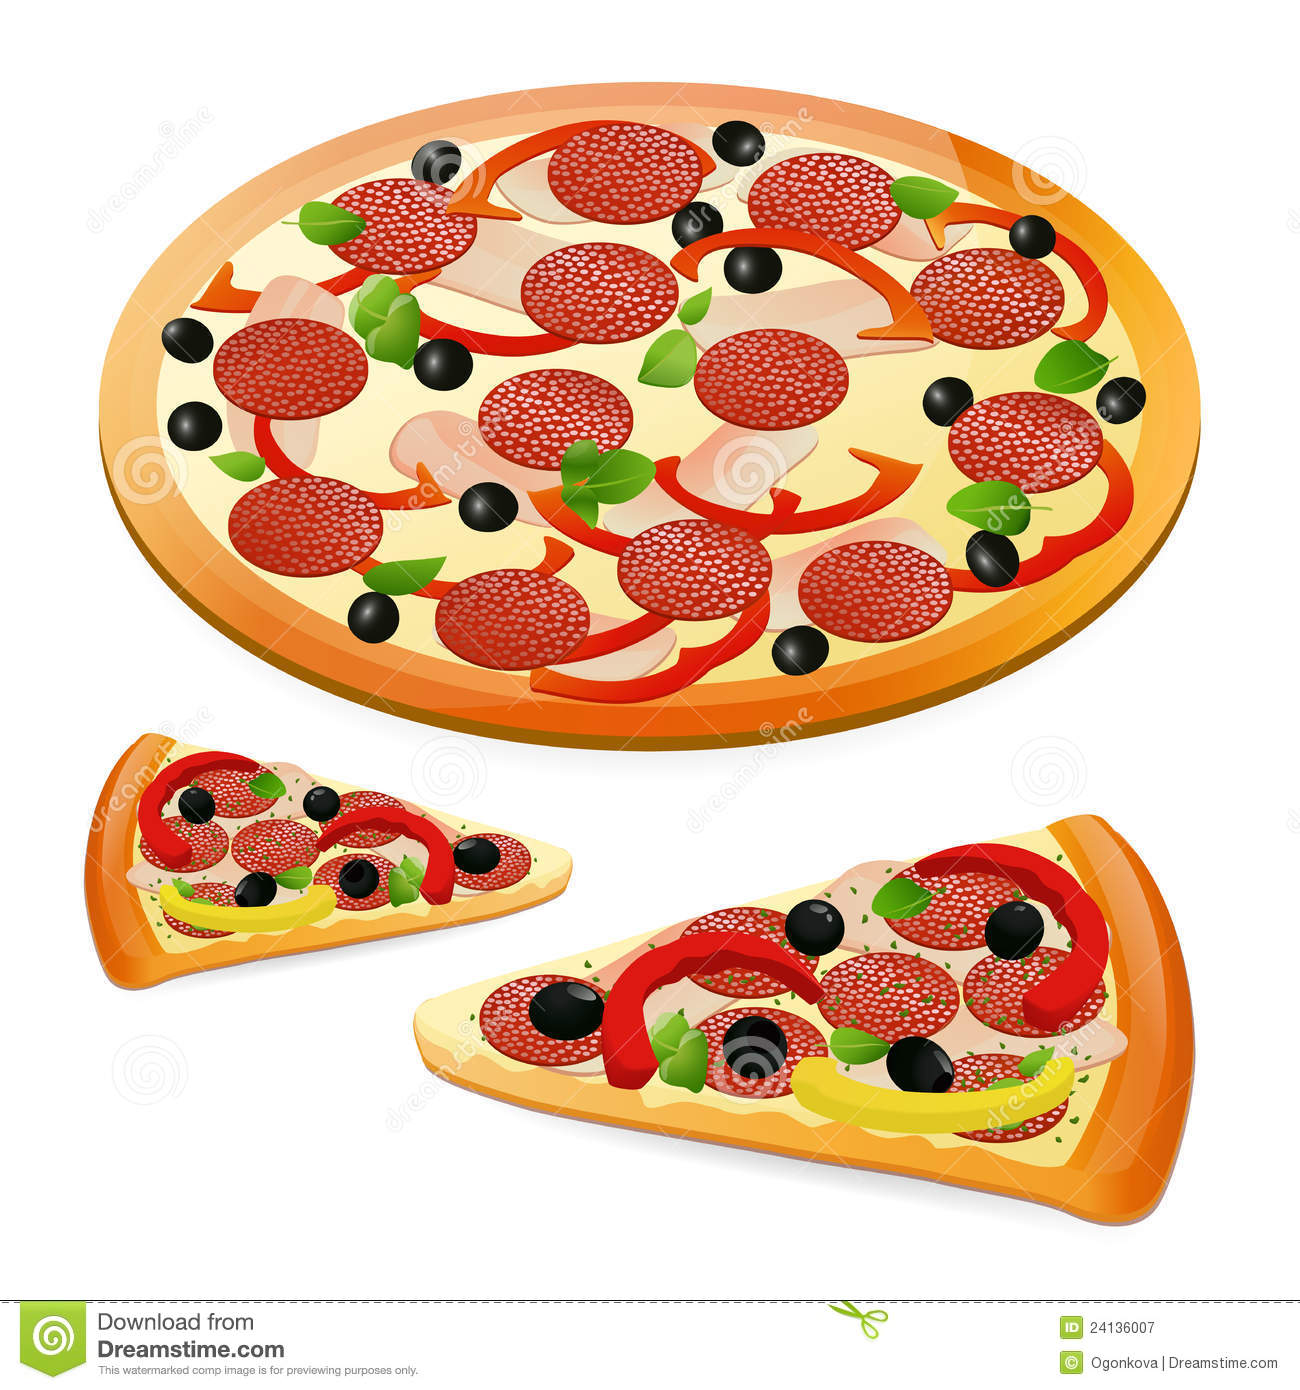 ... Pizza - Vector illustrati